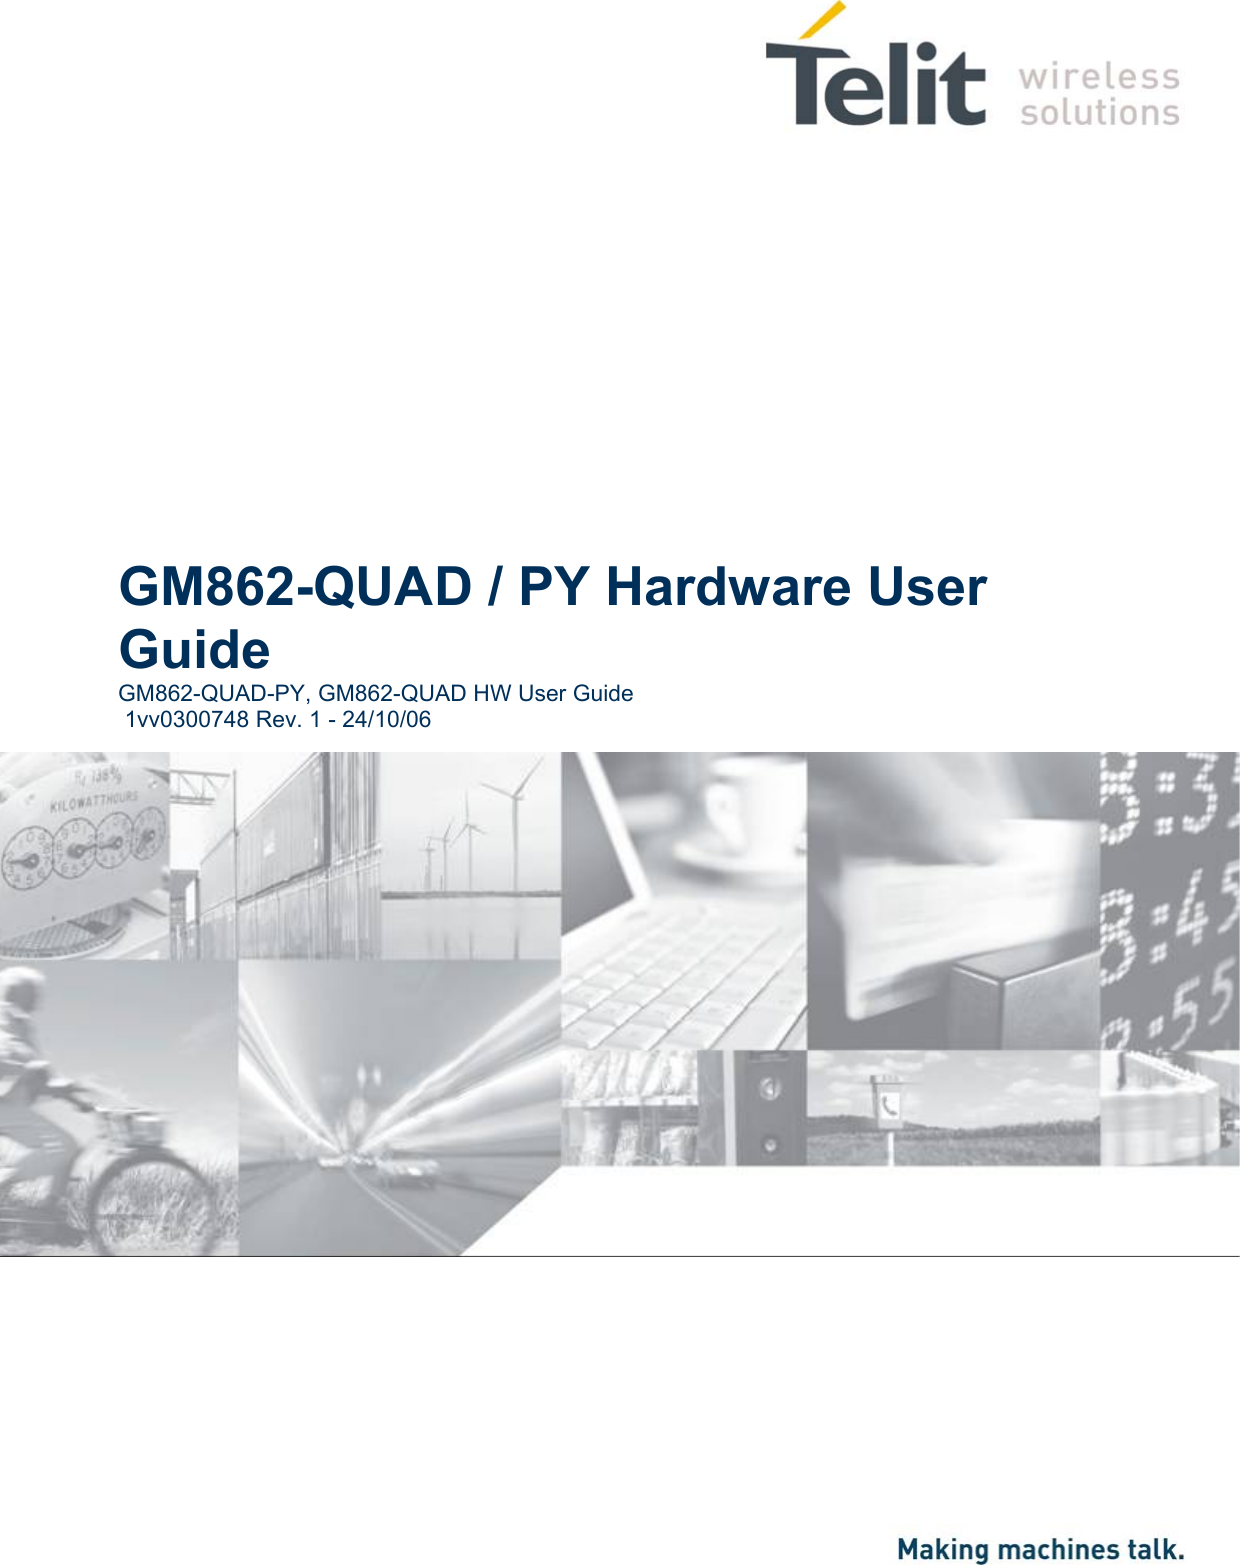                GM862-QUAD / PY Hardware User Guide GM862-QUAD-PY, GM862-QUAD HW User Guide  1vv0300748 Rev. 1 - 24/10/06         